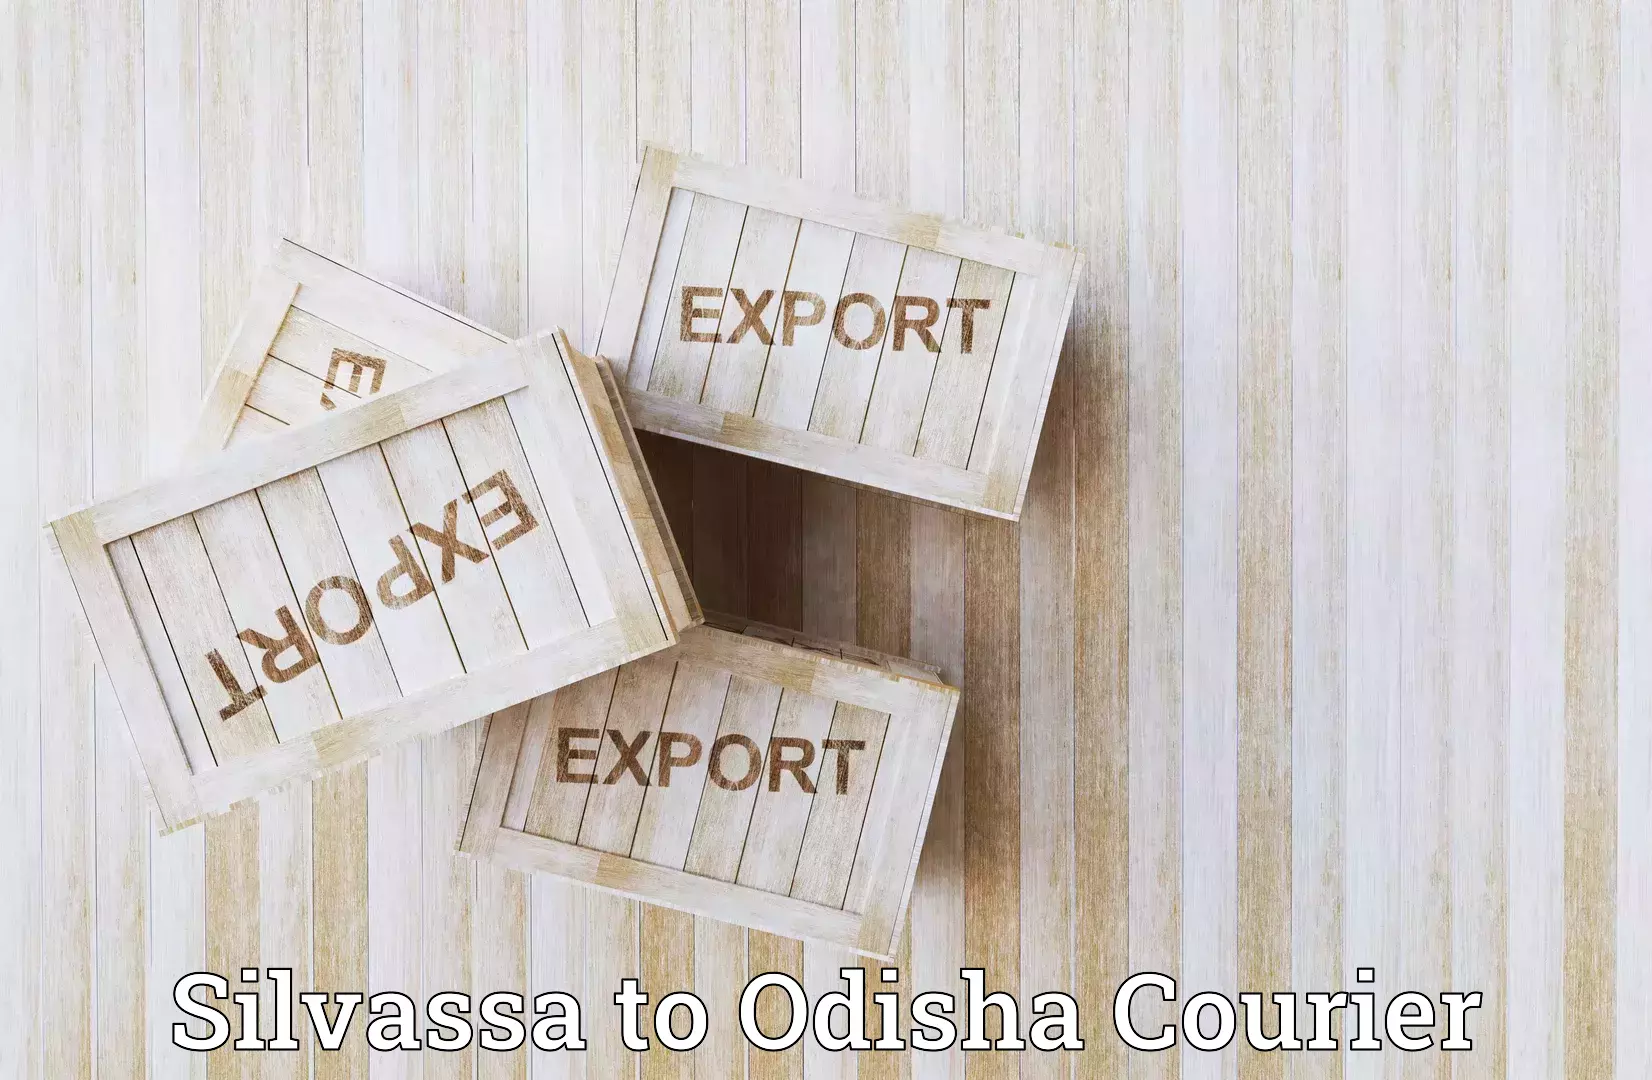 User-friendly delivery service in Silvassa to Odisha